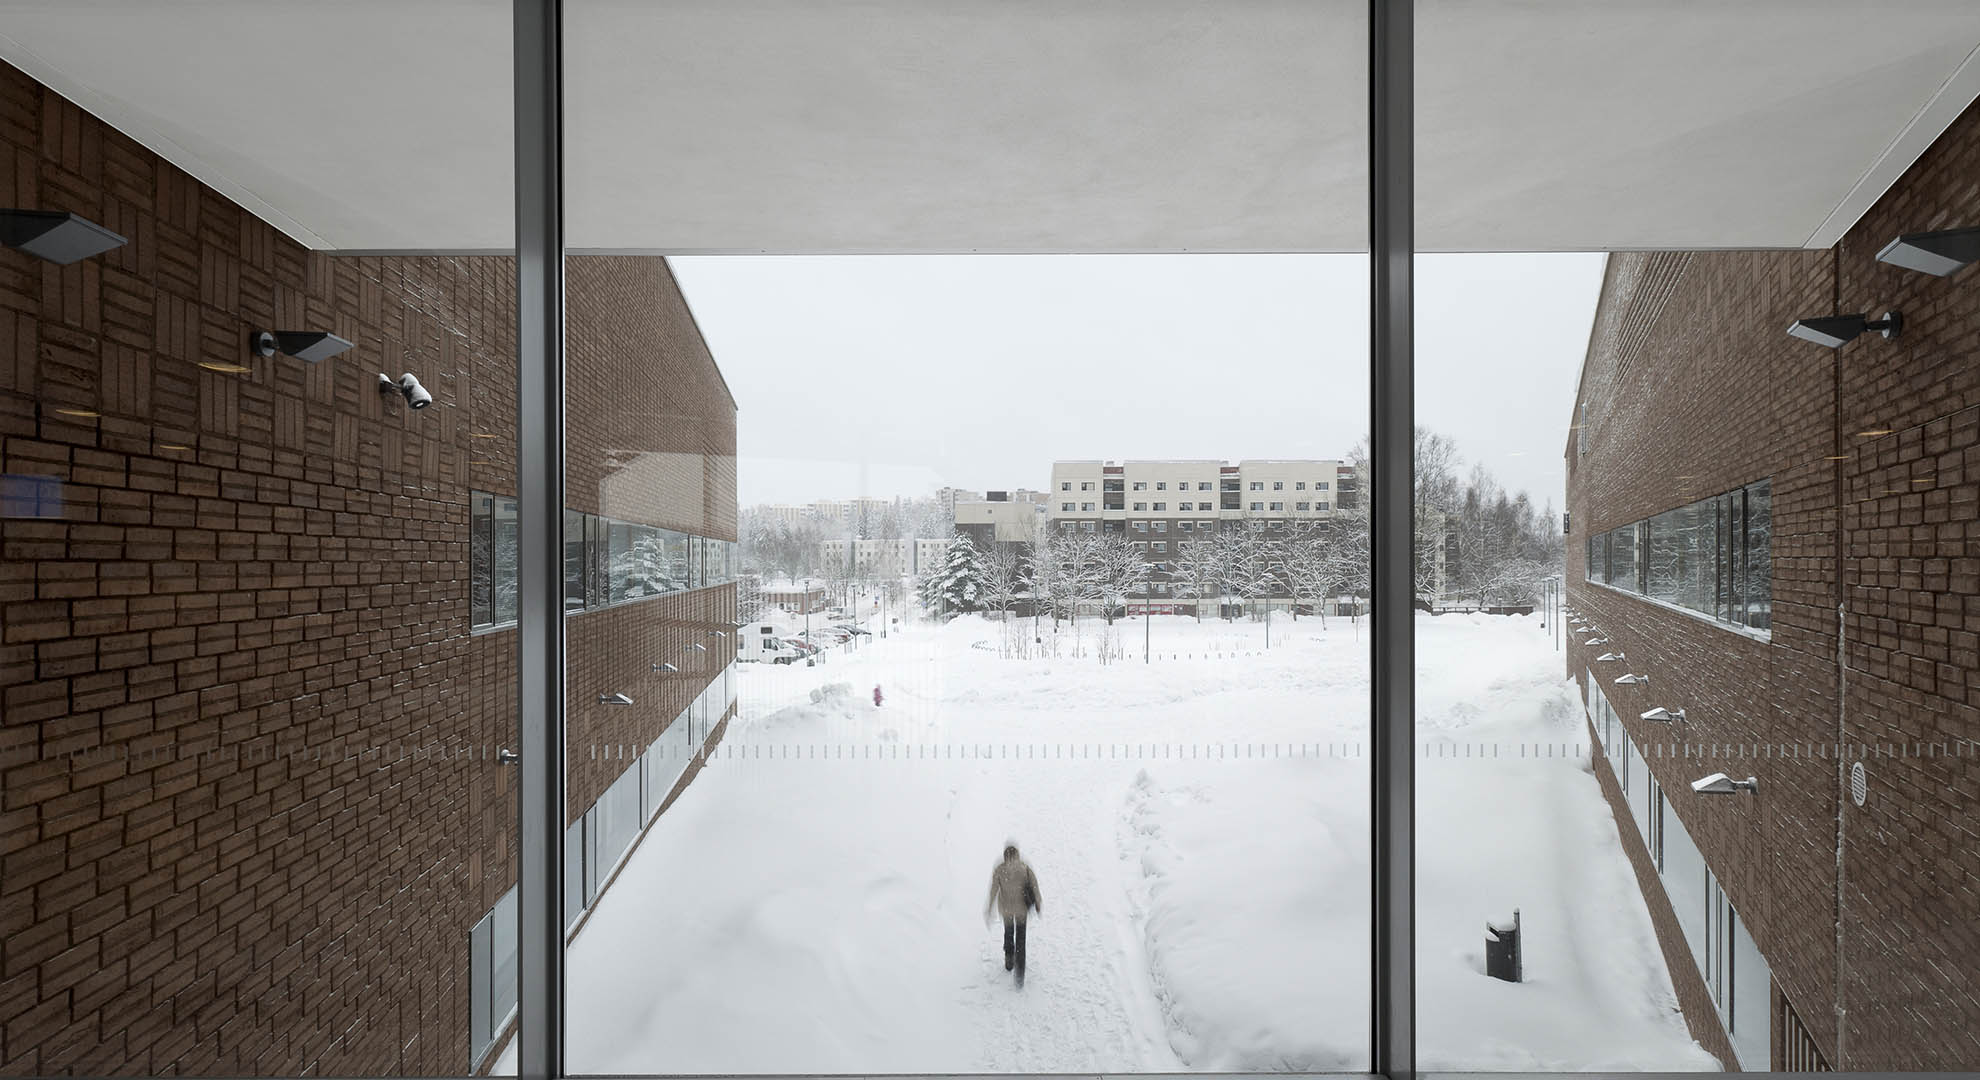 Vista al exterior desde una escuela de la ciudad de Espoo.